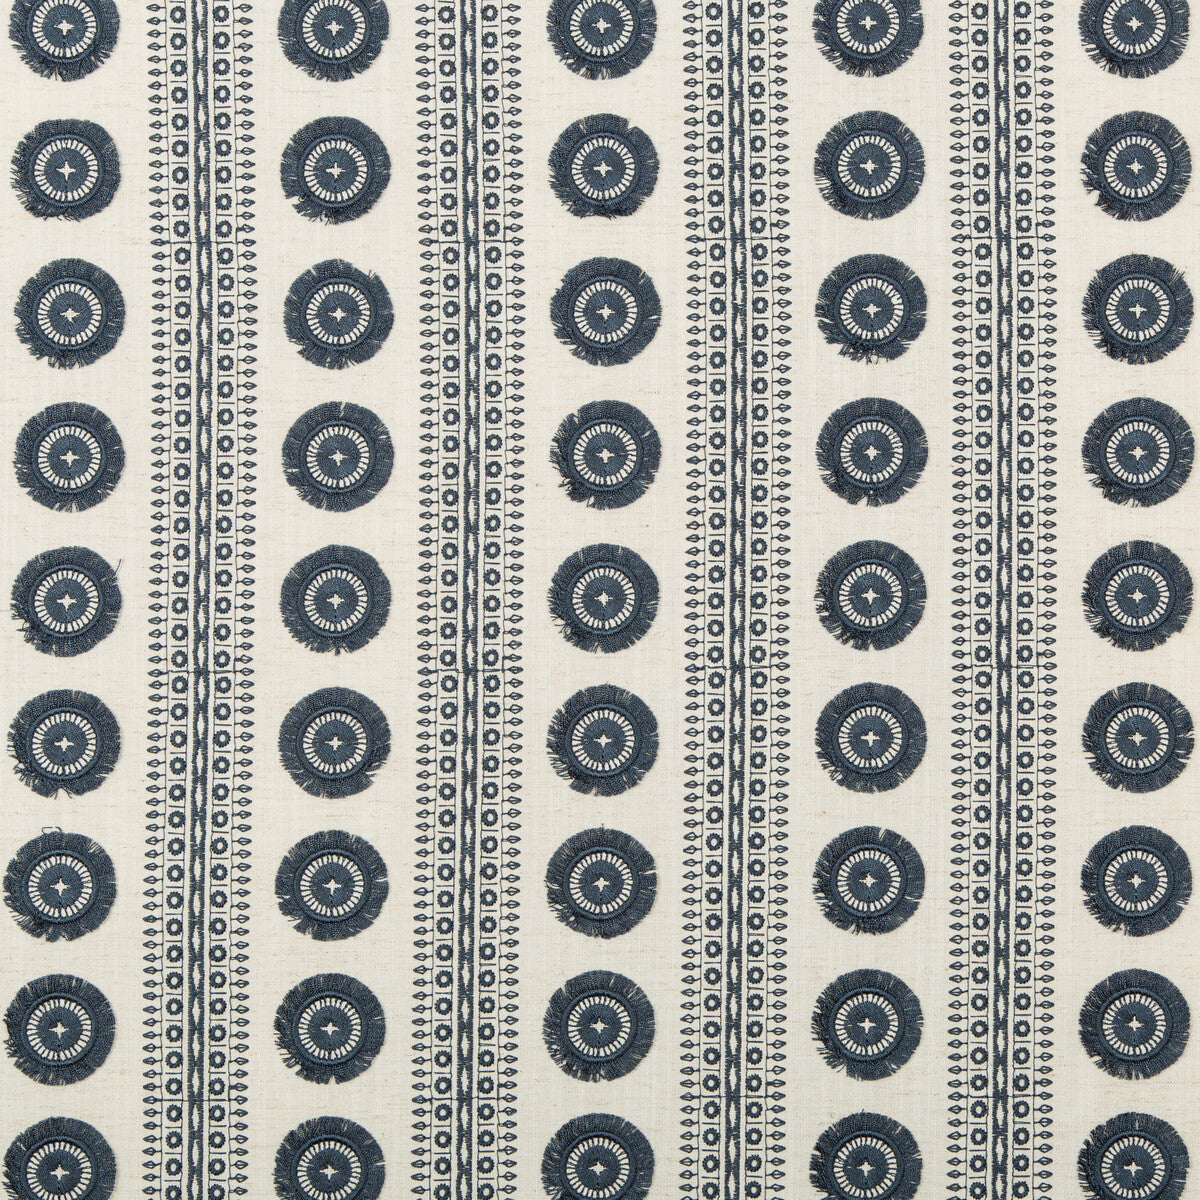 Kravet Basics fabric in 4688-50 color - pattern 4688.50.0 - by Kravet Basics